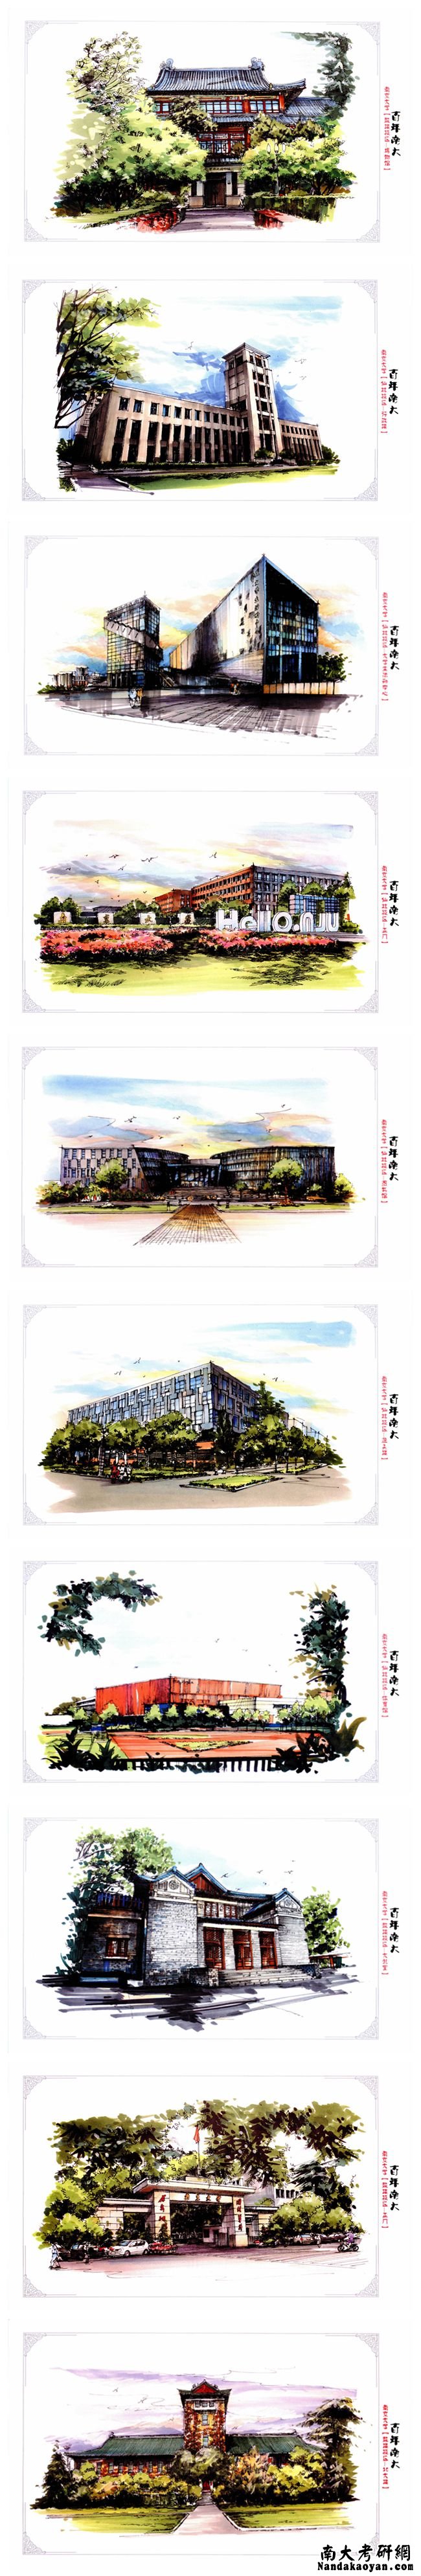 南京大学手绘明信片一套10张